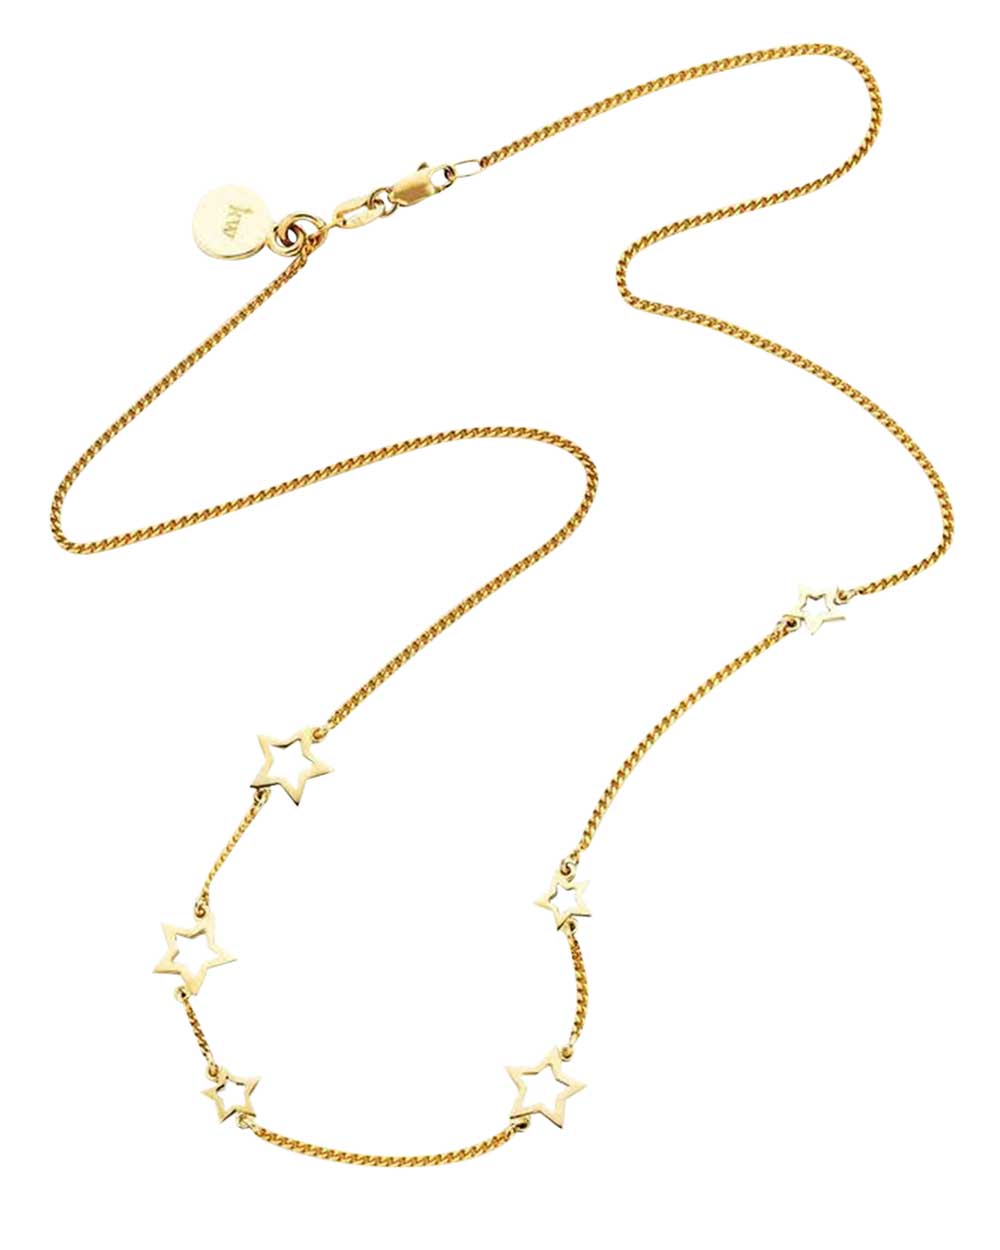 Karen Walker Jewellery necklace, $1839